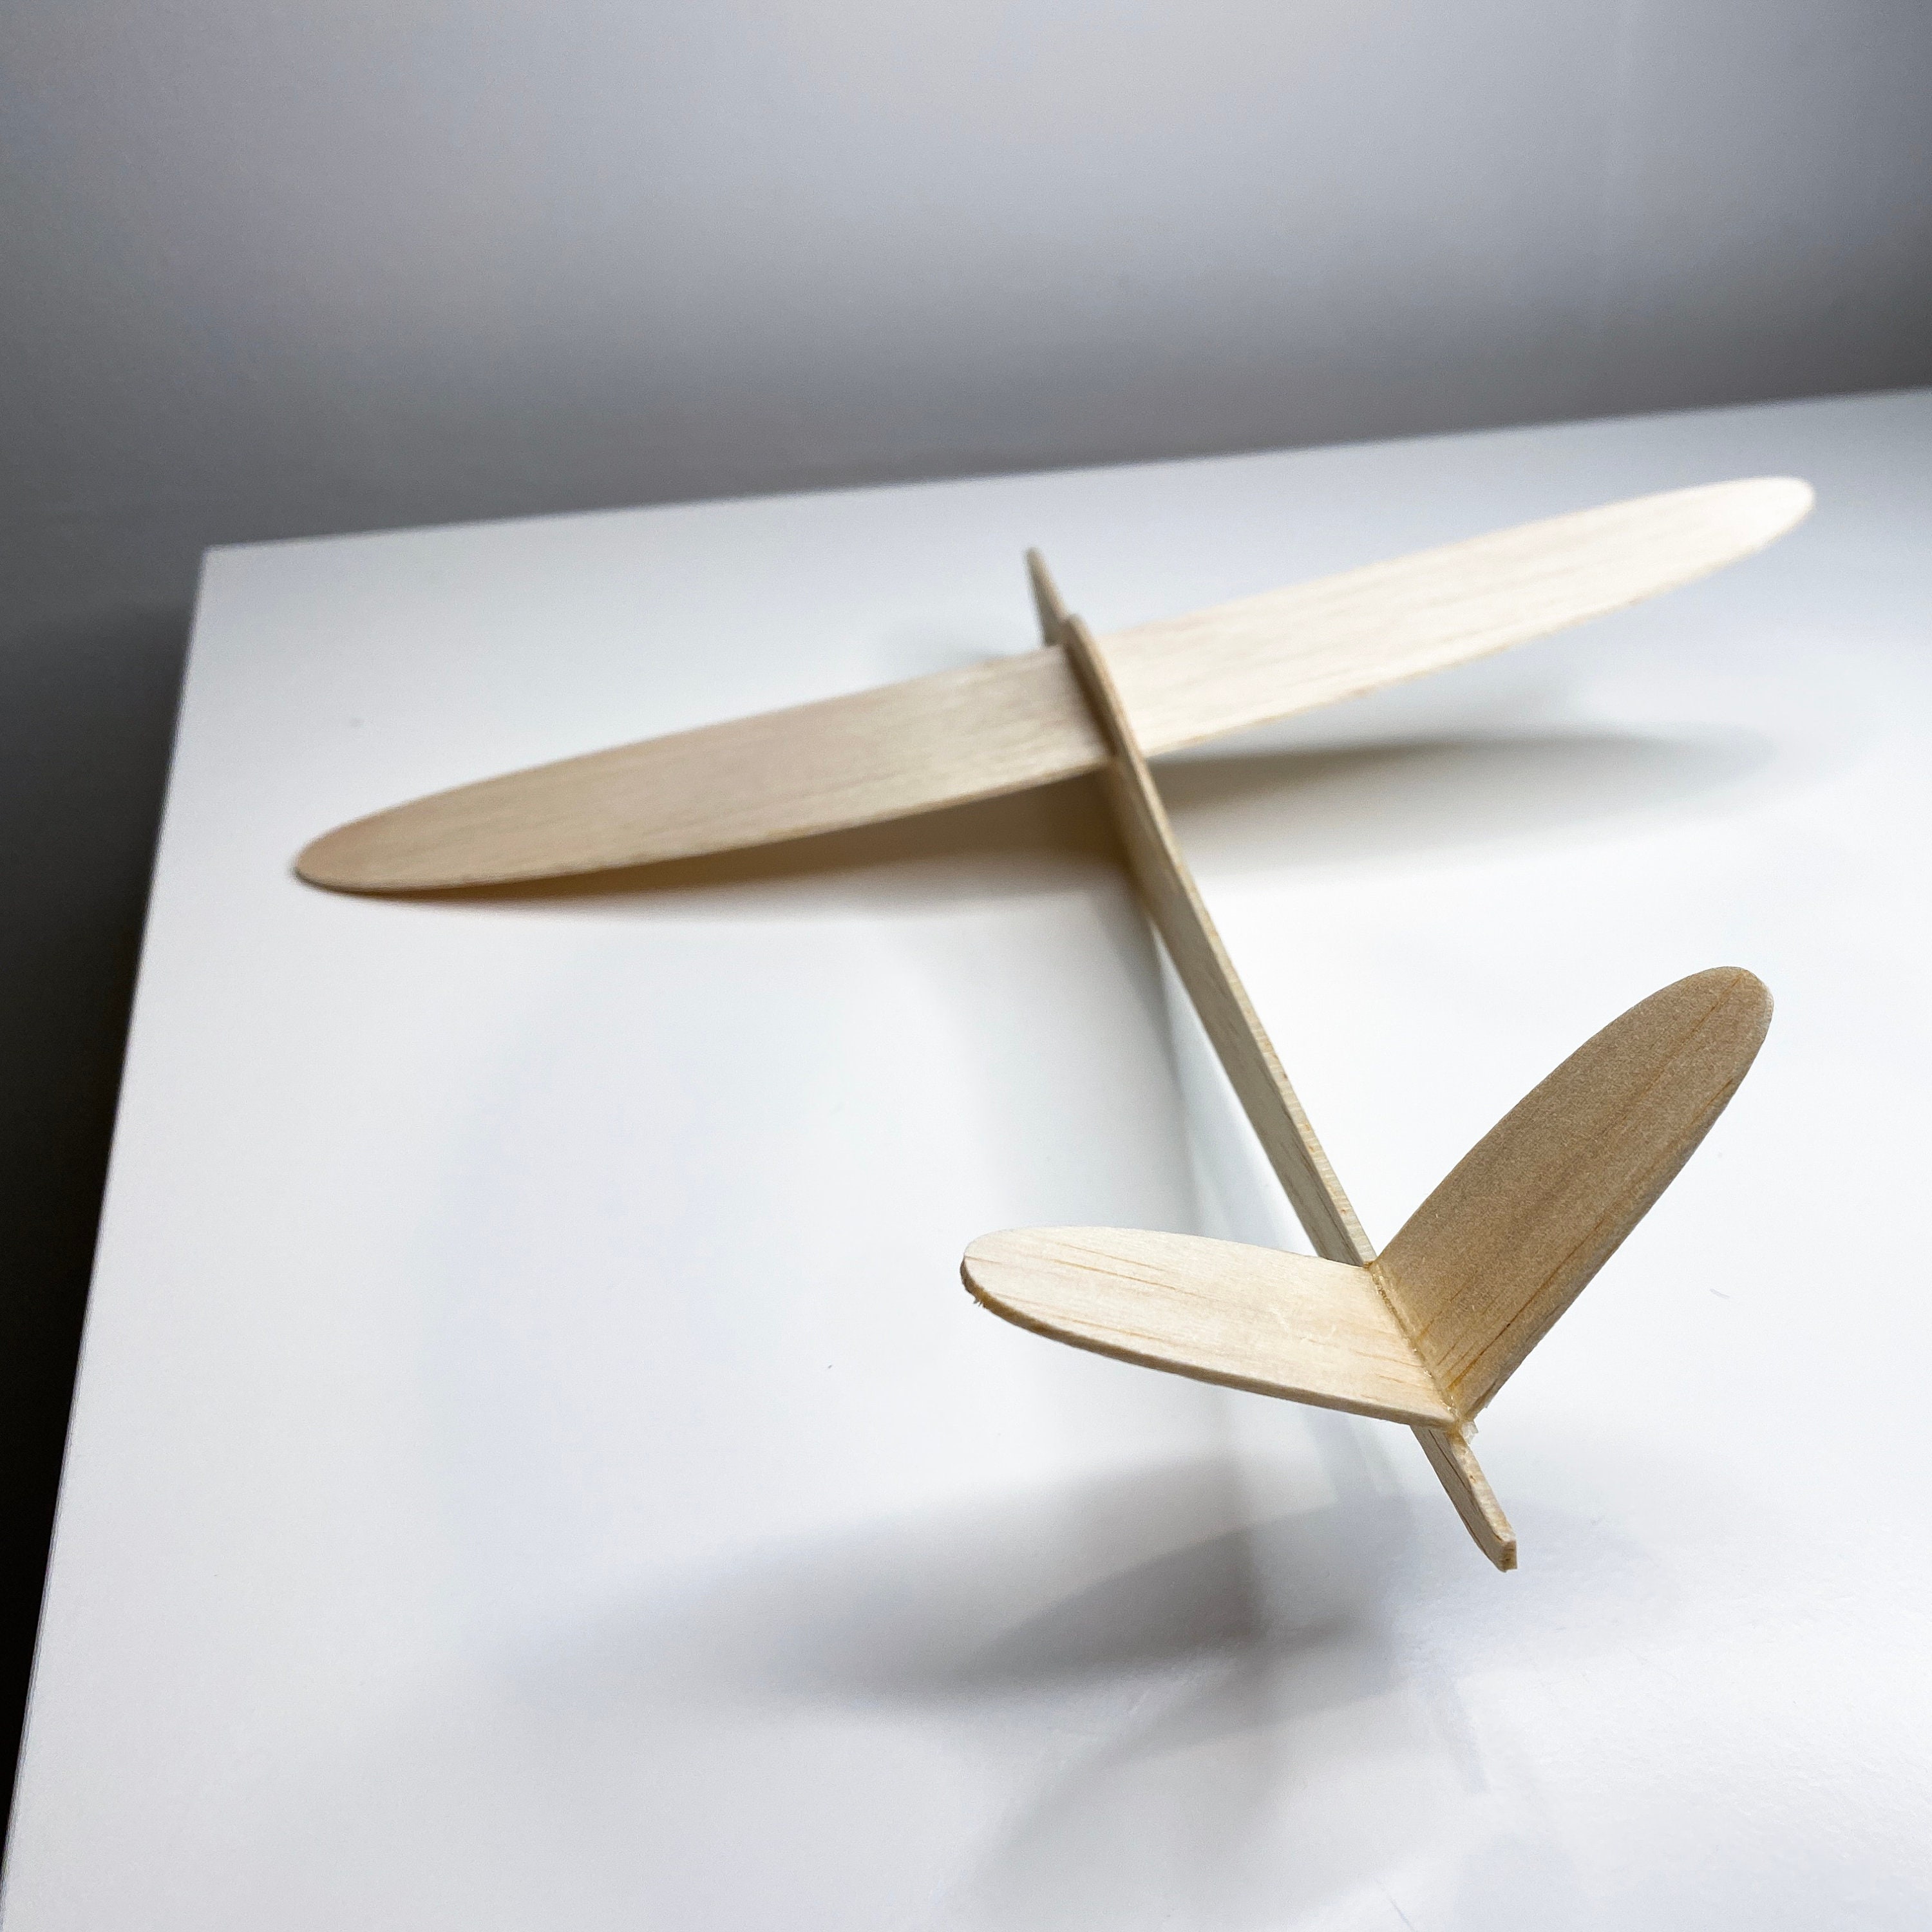  Balsa Wood Airplan - Juego de 20 piezas de hojas de madera de  balsa placa de madera modelo barco avión 3.937x3.937x0.039 in - Hoja de  placa 3/32 piezas de herramientas Hoja